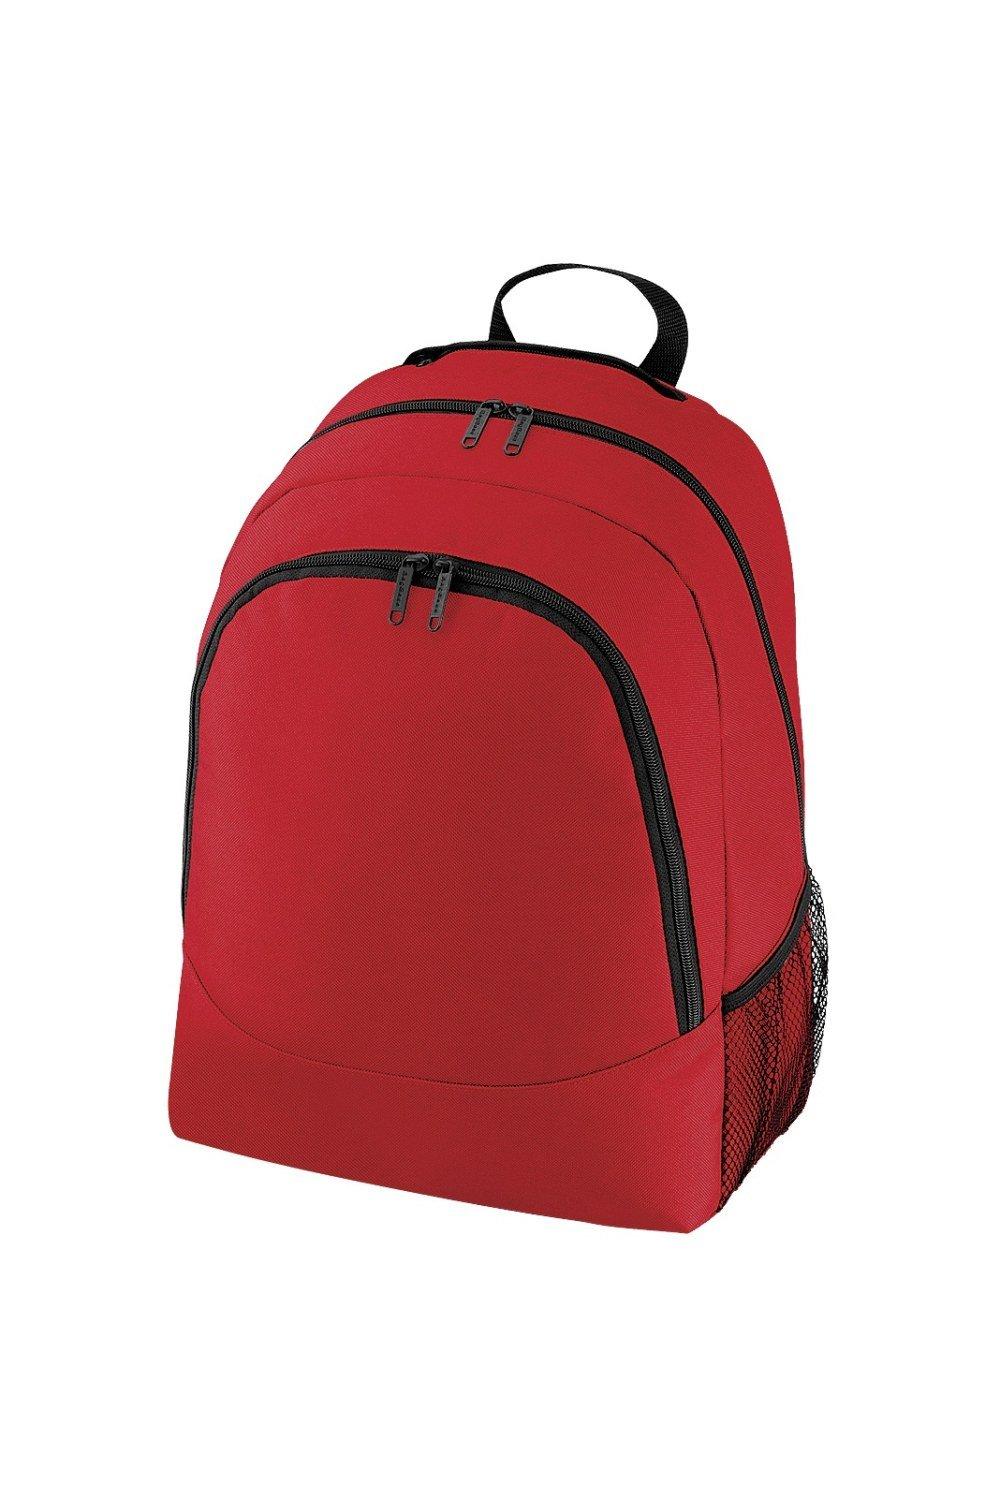 Универсальный многоцелевой рюкзак/рюкзак/сумка (18 литров) (2 шт. в упаковке) Bagbase, красный чехол mypads toyota тойота 2 для tcl 20 5g задняя панель накладка бампер